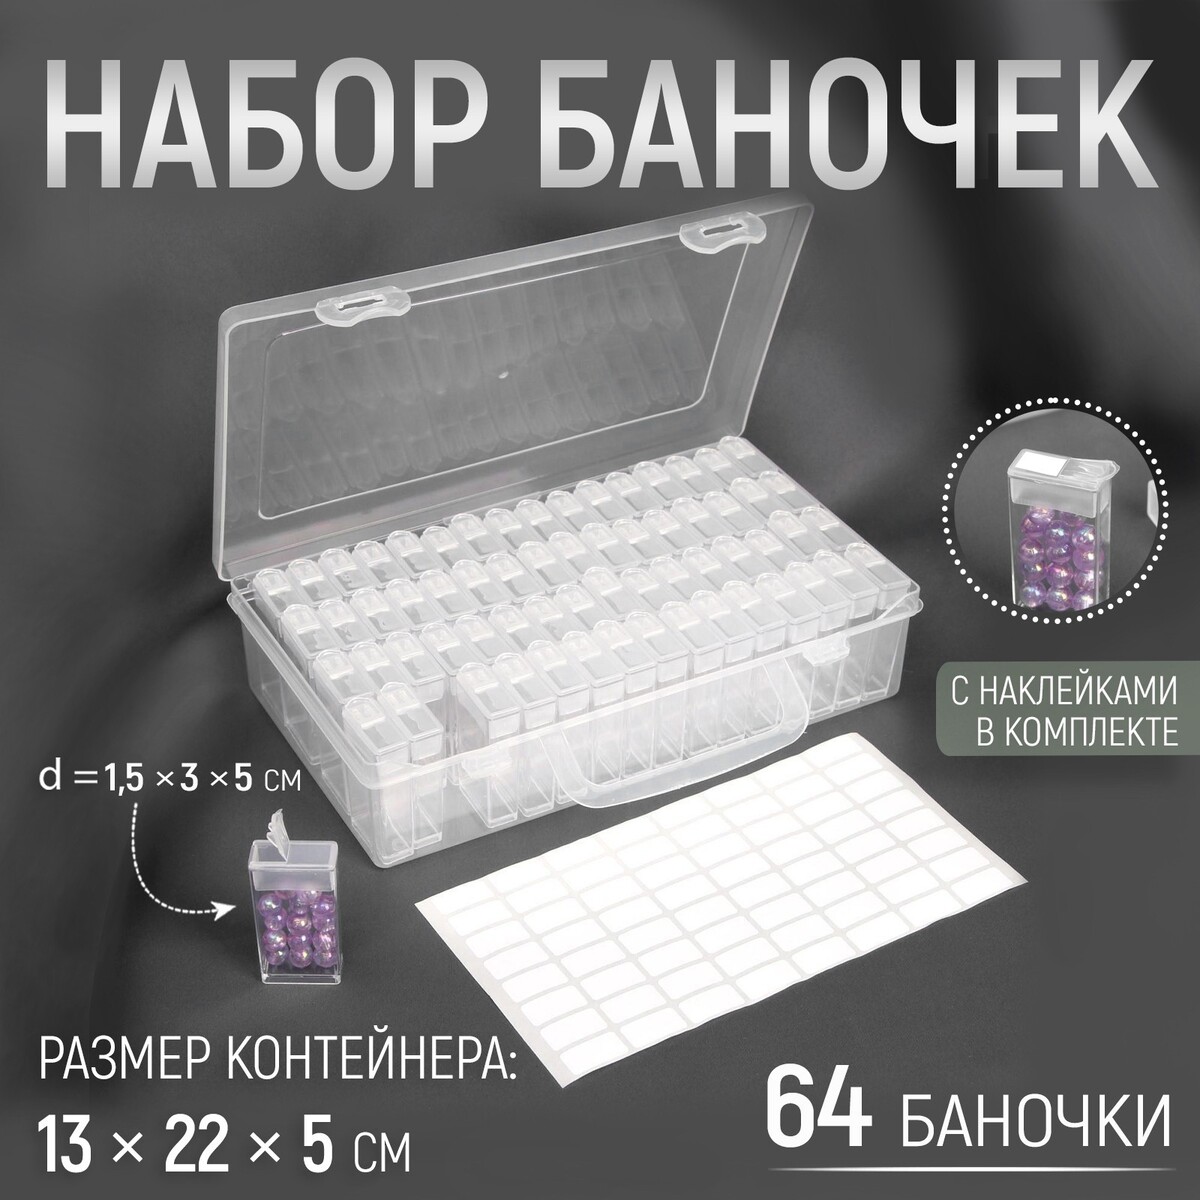 Набор баночек для рукоделия, 64 баночки, 1,5 × 3 × 5 см, в контейнере, 13 × 22 × 5 см, с наклейками, цвет прозрачный баночки для хранения 16 шт d 3 5 10 г в чехле прозрачный